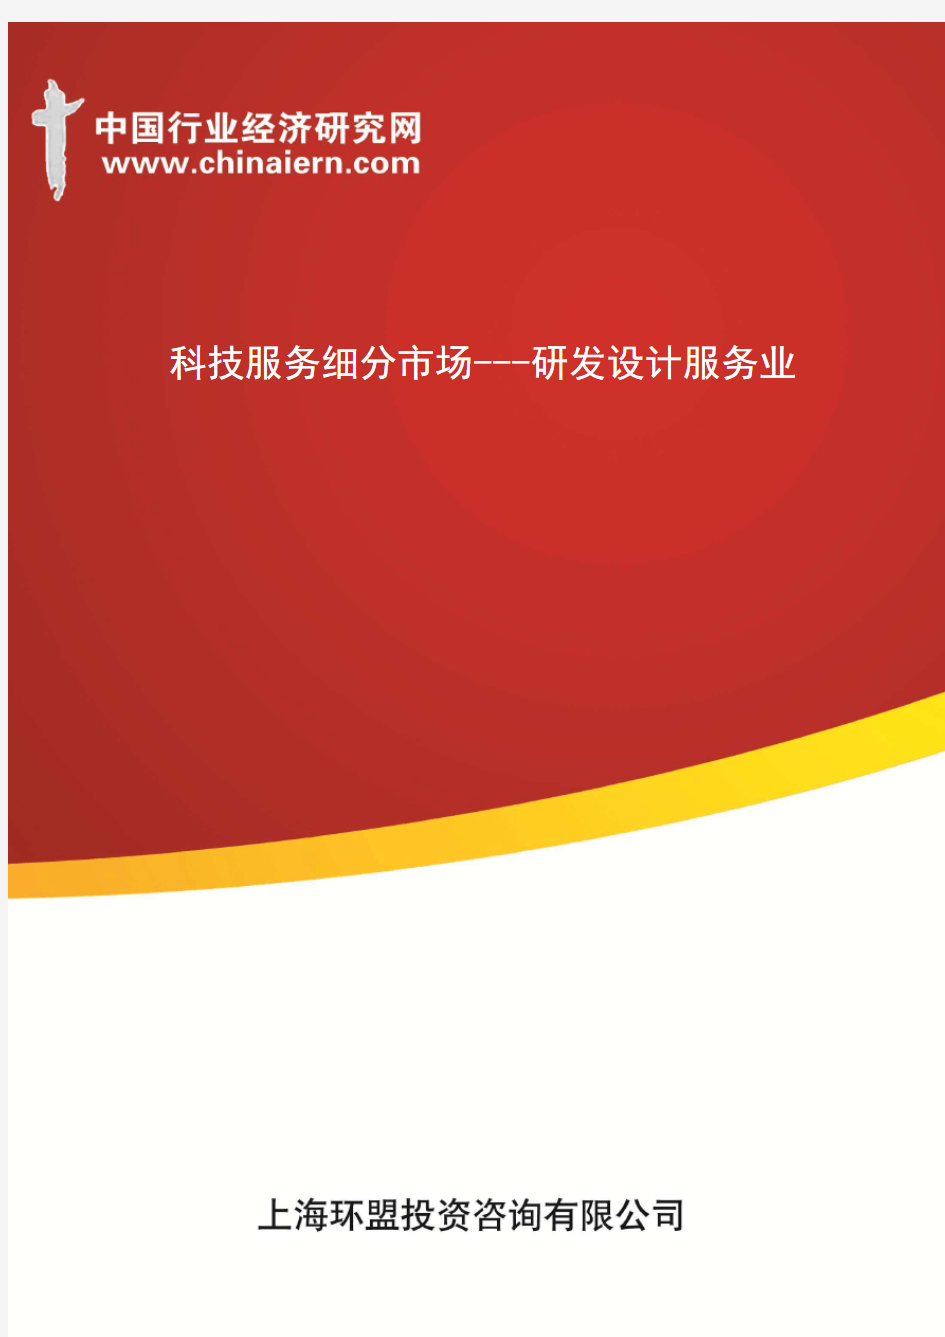 科技服务细分市场---研发设计服务业(上海环盟)